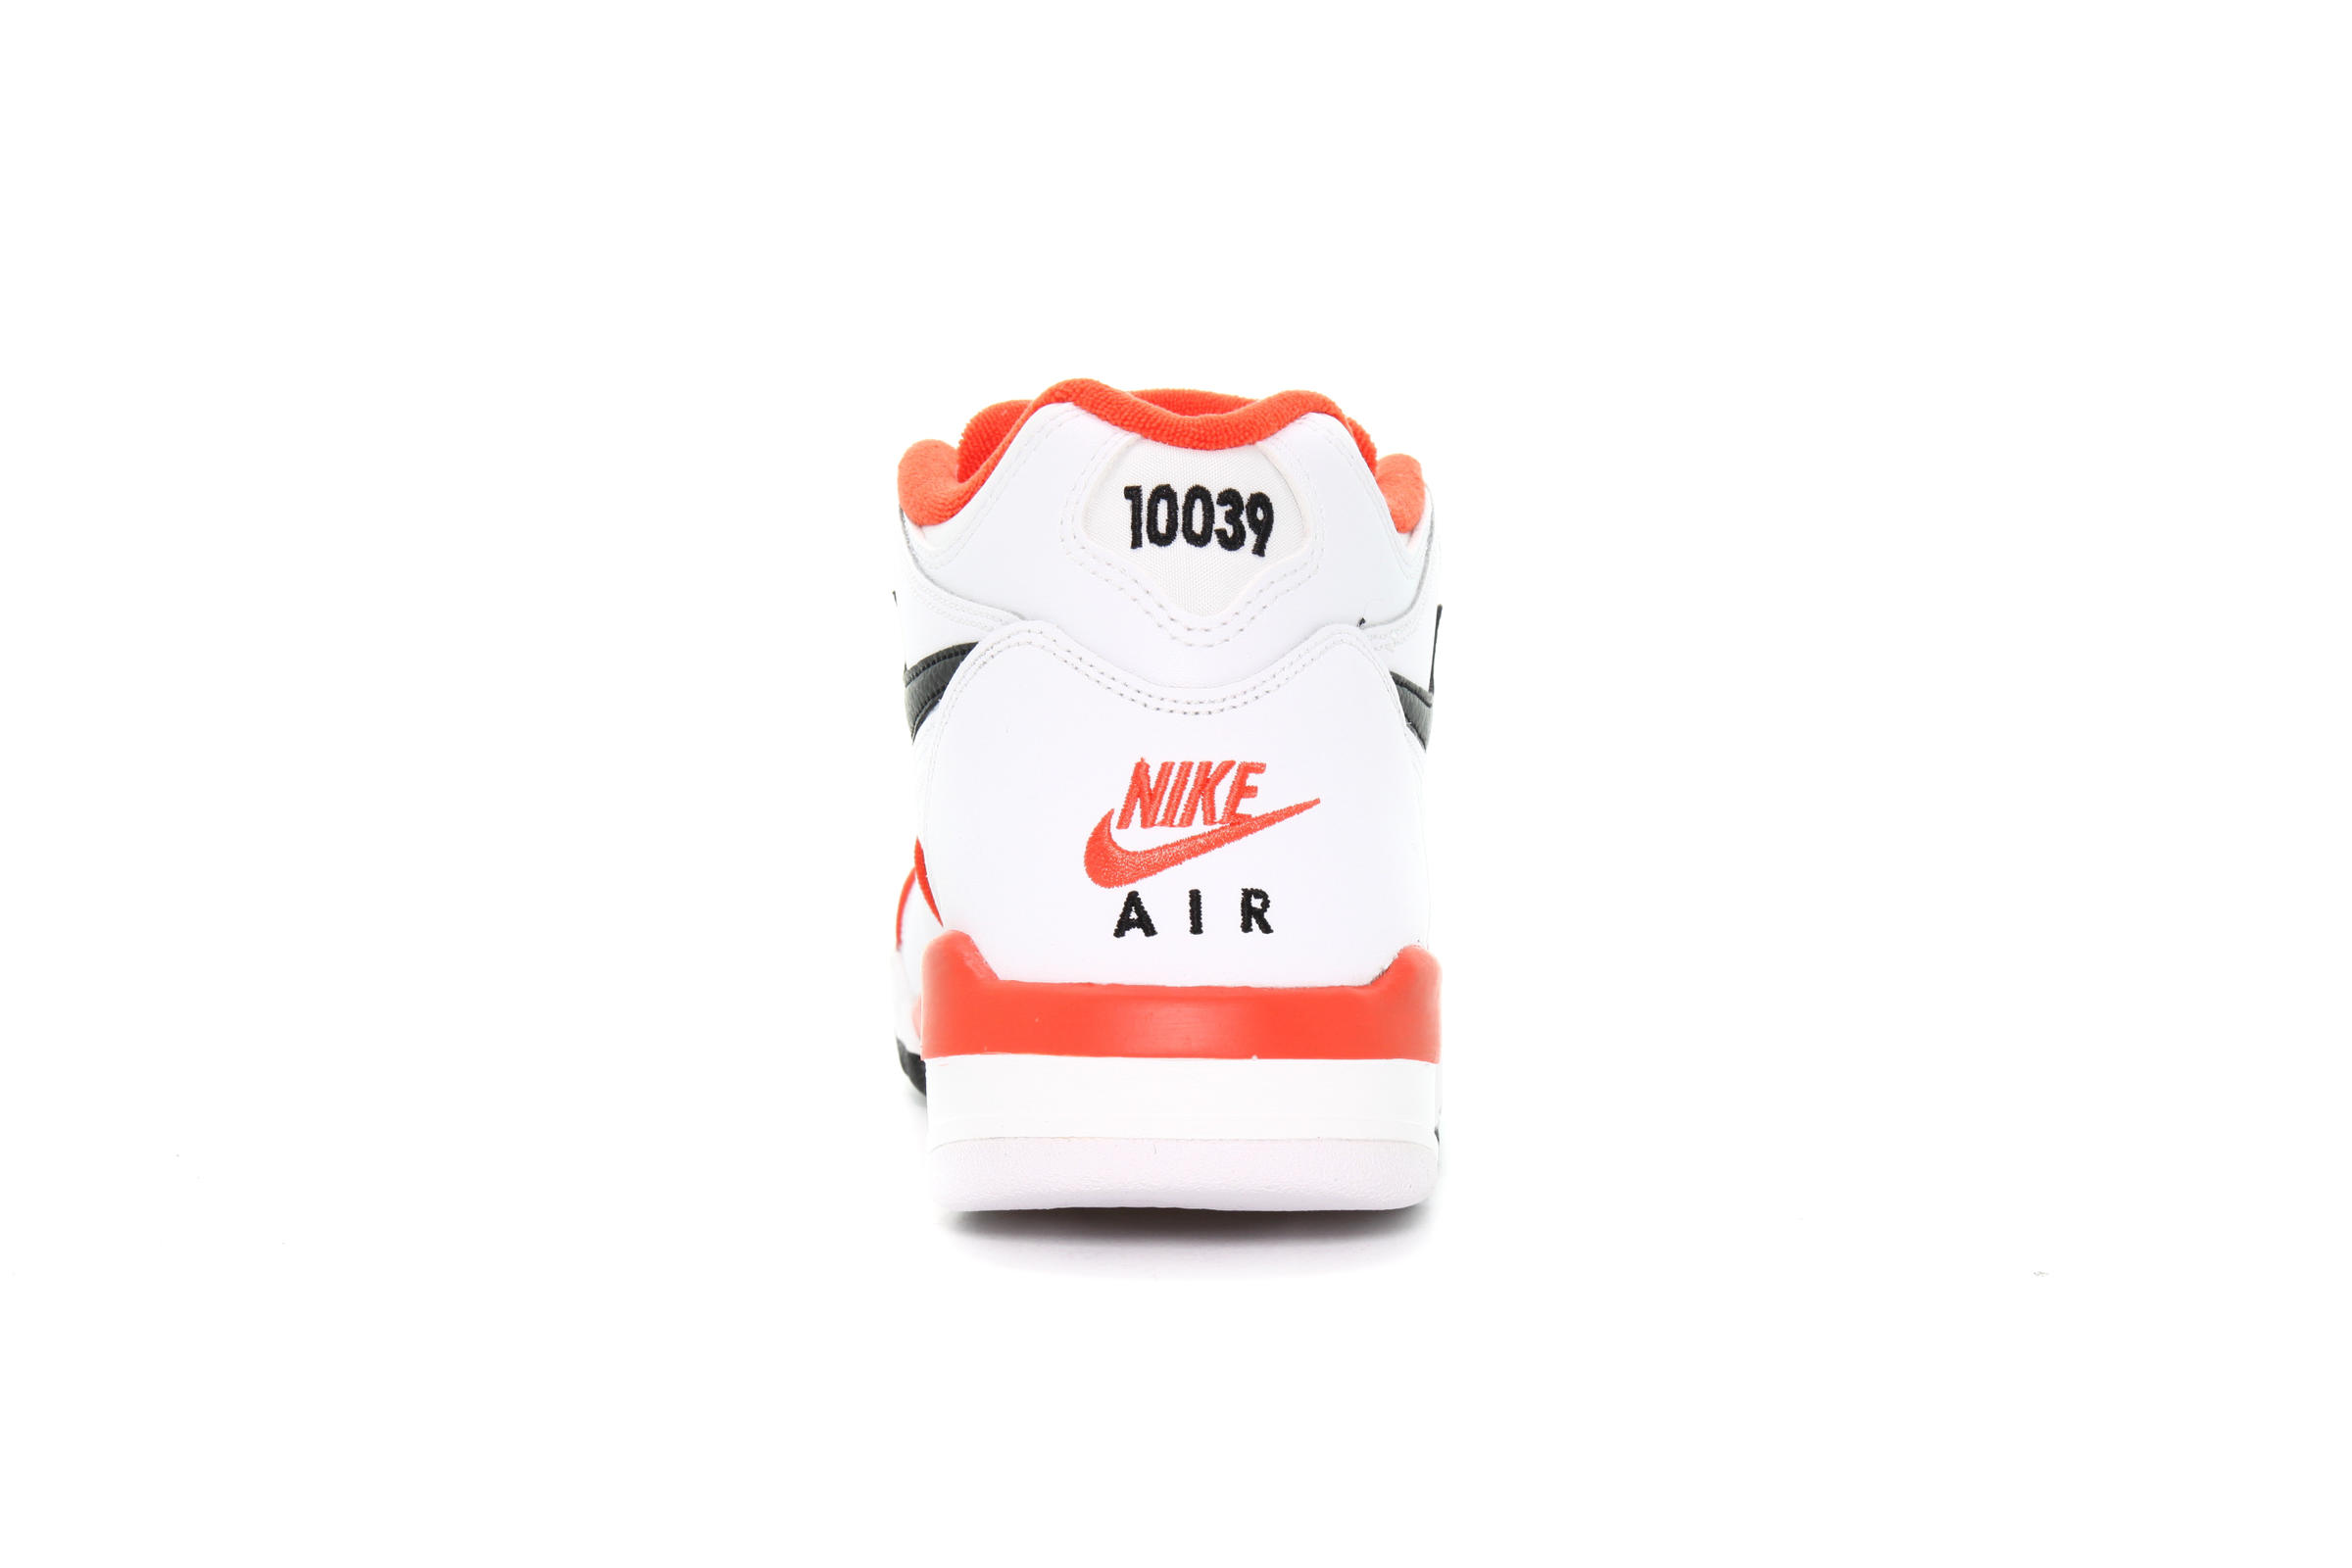 Nike AIR FLIGHT 89 EMB "RUCKER PARK"